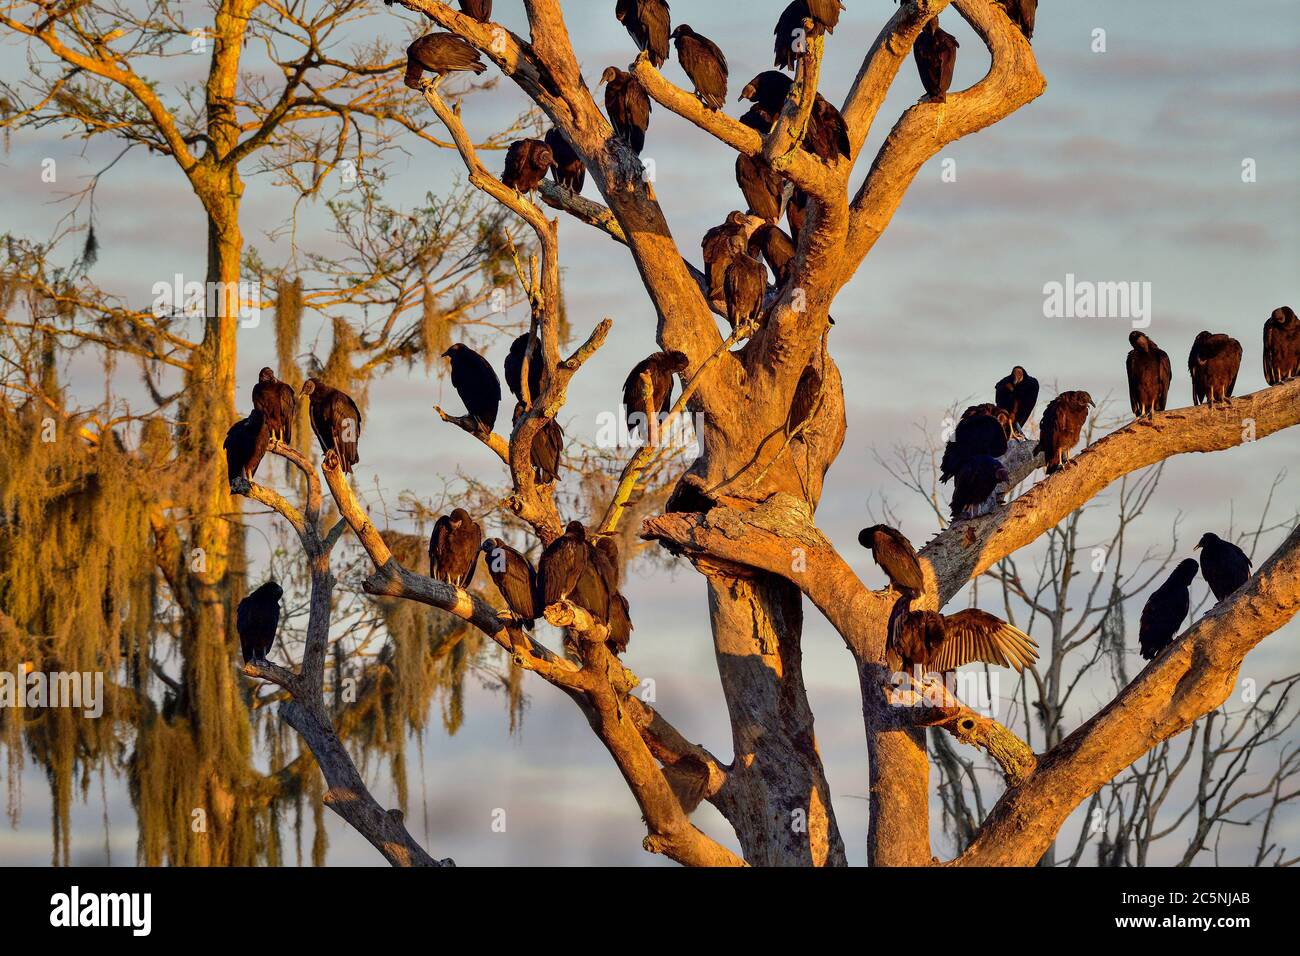 Los buitres negros se están calentando en su árbol que se asomaba Foto de stock